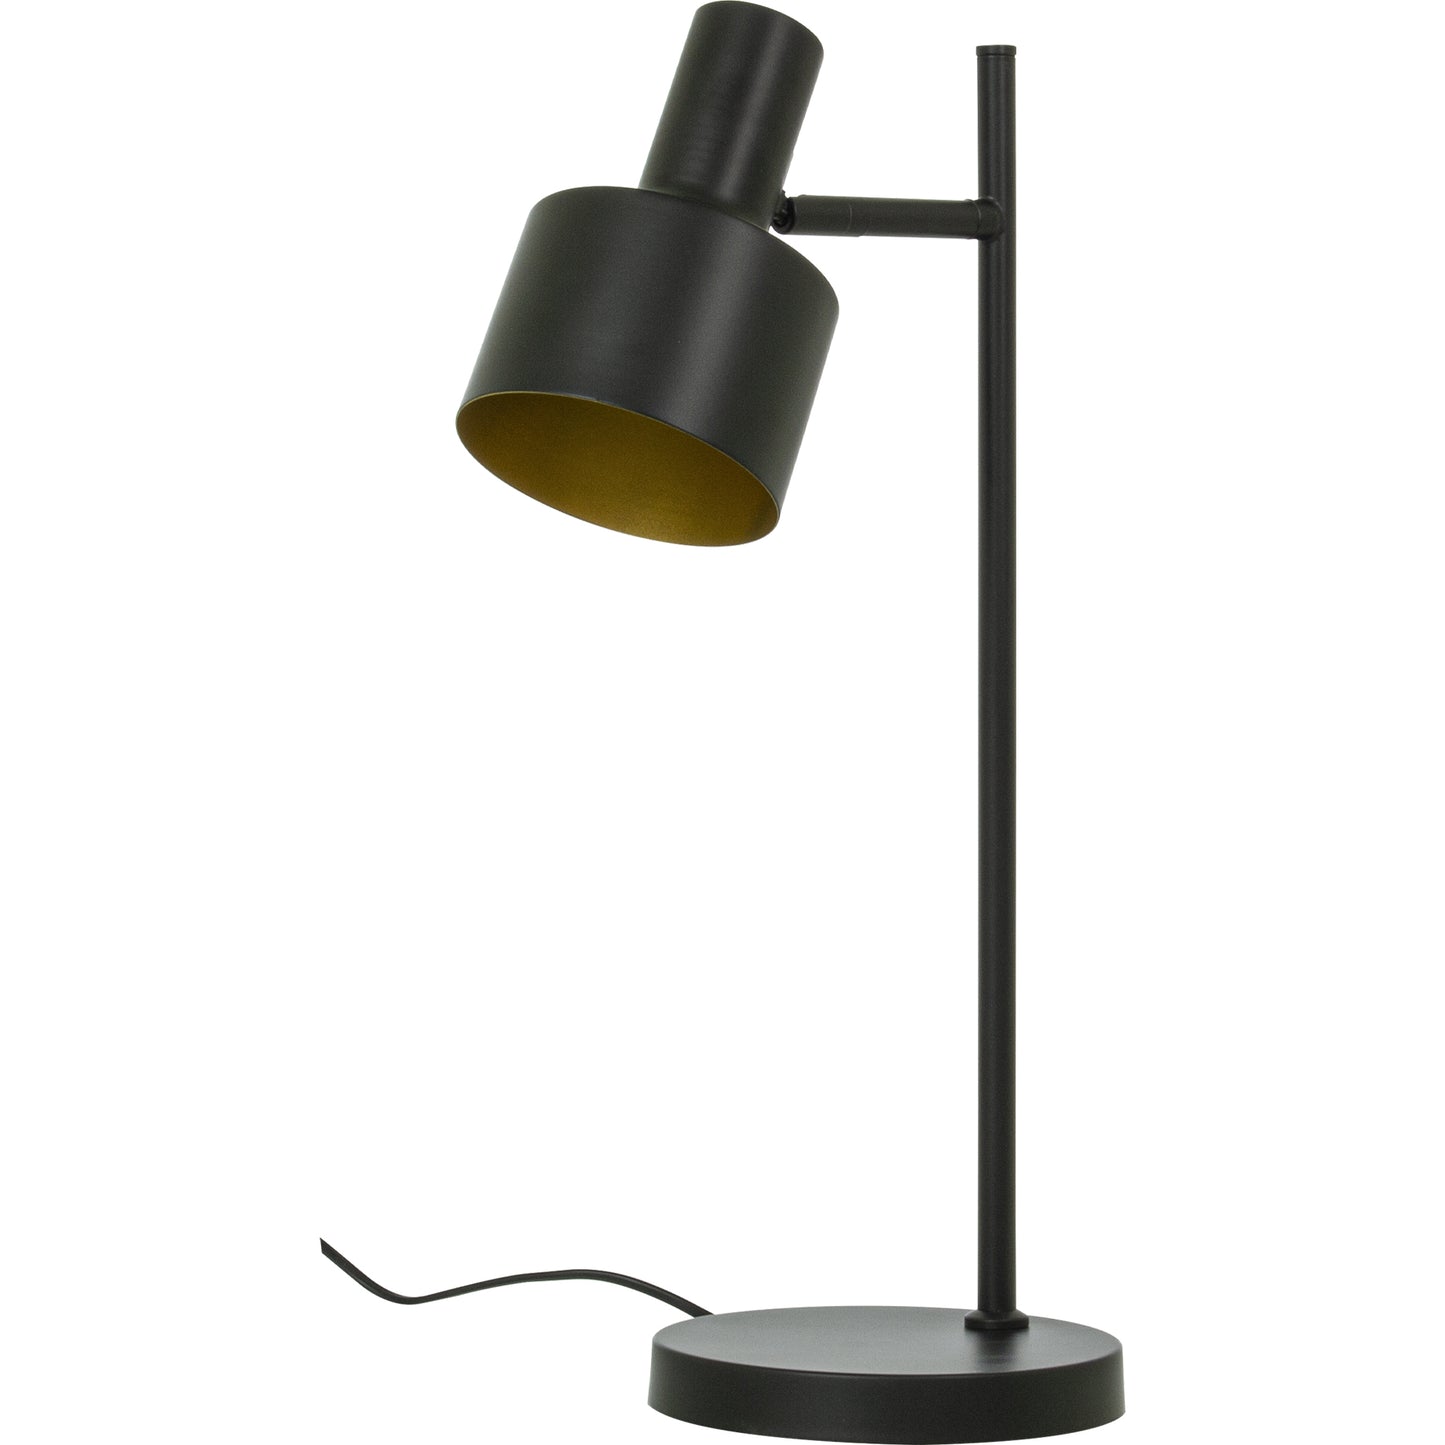 Ferdinand retroinspirert bordlampe  laget i svart metall med gyllen innside av skjermen - Aneta belysning